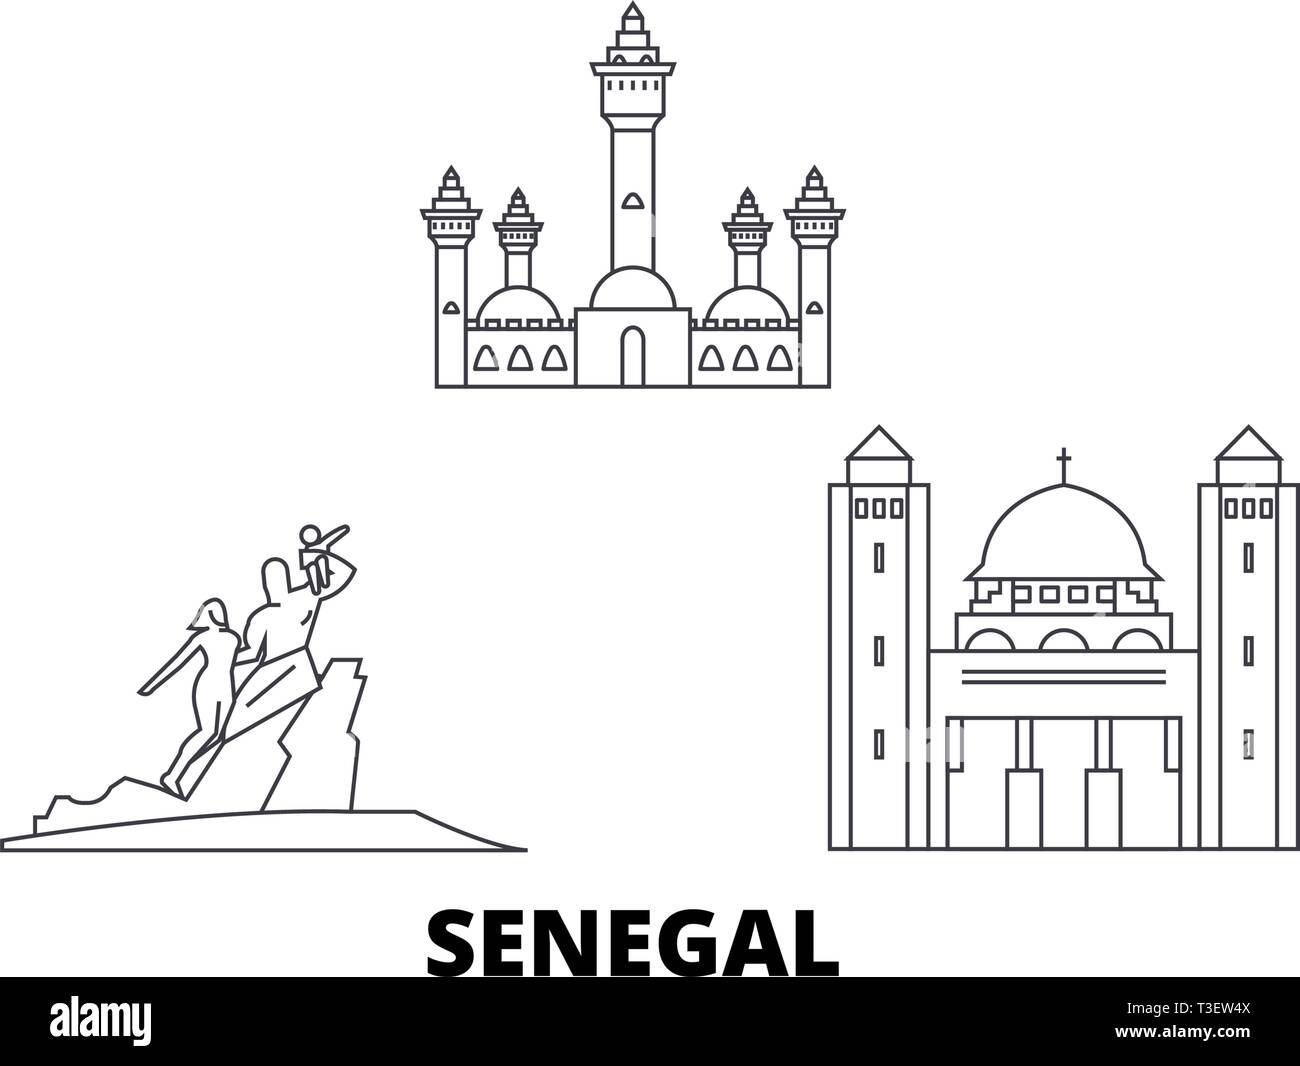 Sénégal voyage ligne. set skyline Sénégal contours city vector illustration, symbole de voyage, sites touristiques, monuments. Illustration de Vecteur